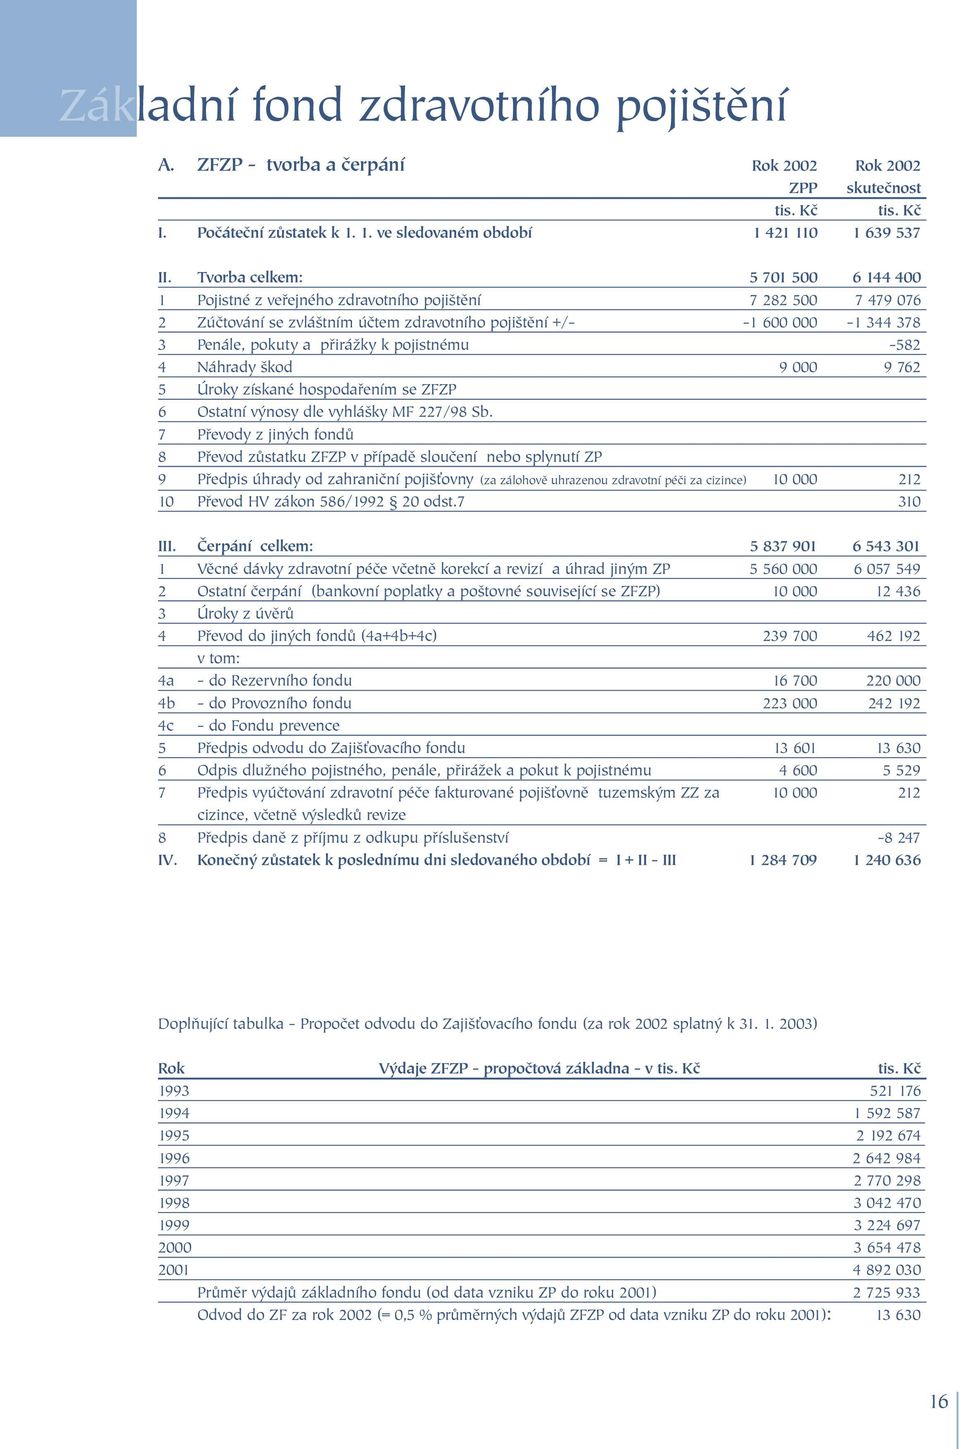 přirážky k pojistnému -582 4 Náhrady škod 9 000 9 762 5 Úroky získané hospodařením se ZFZP 6 Ostatní výnosy dle vyhlášky MF 227/98 Sb.